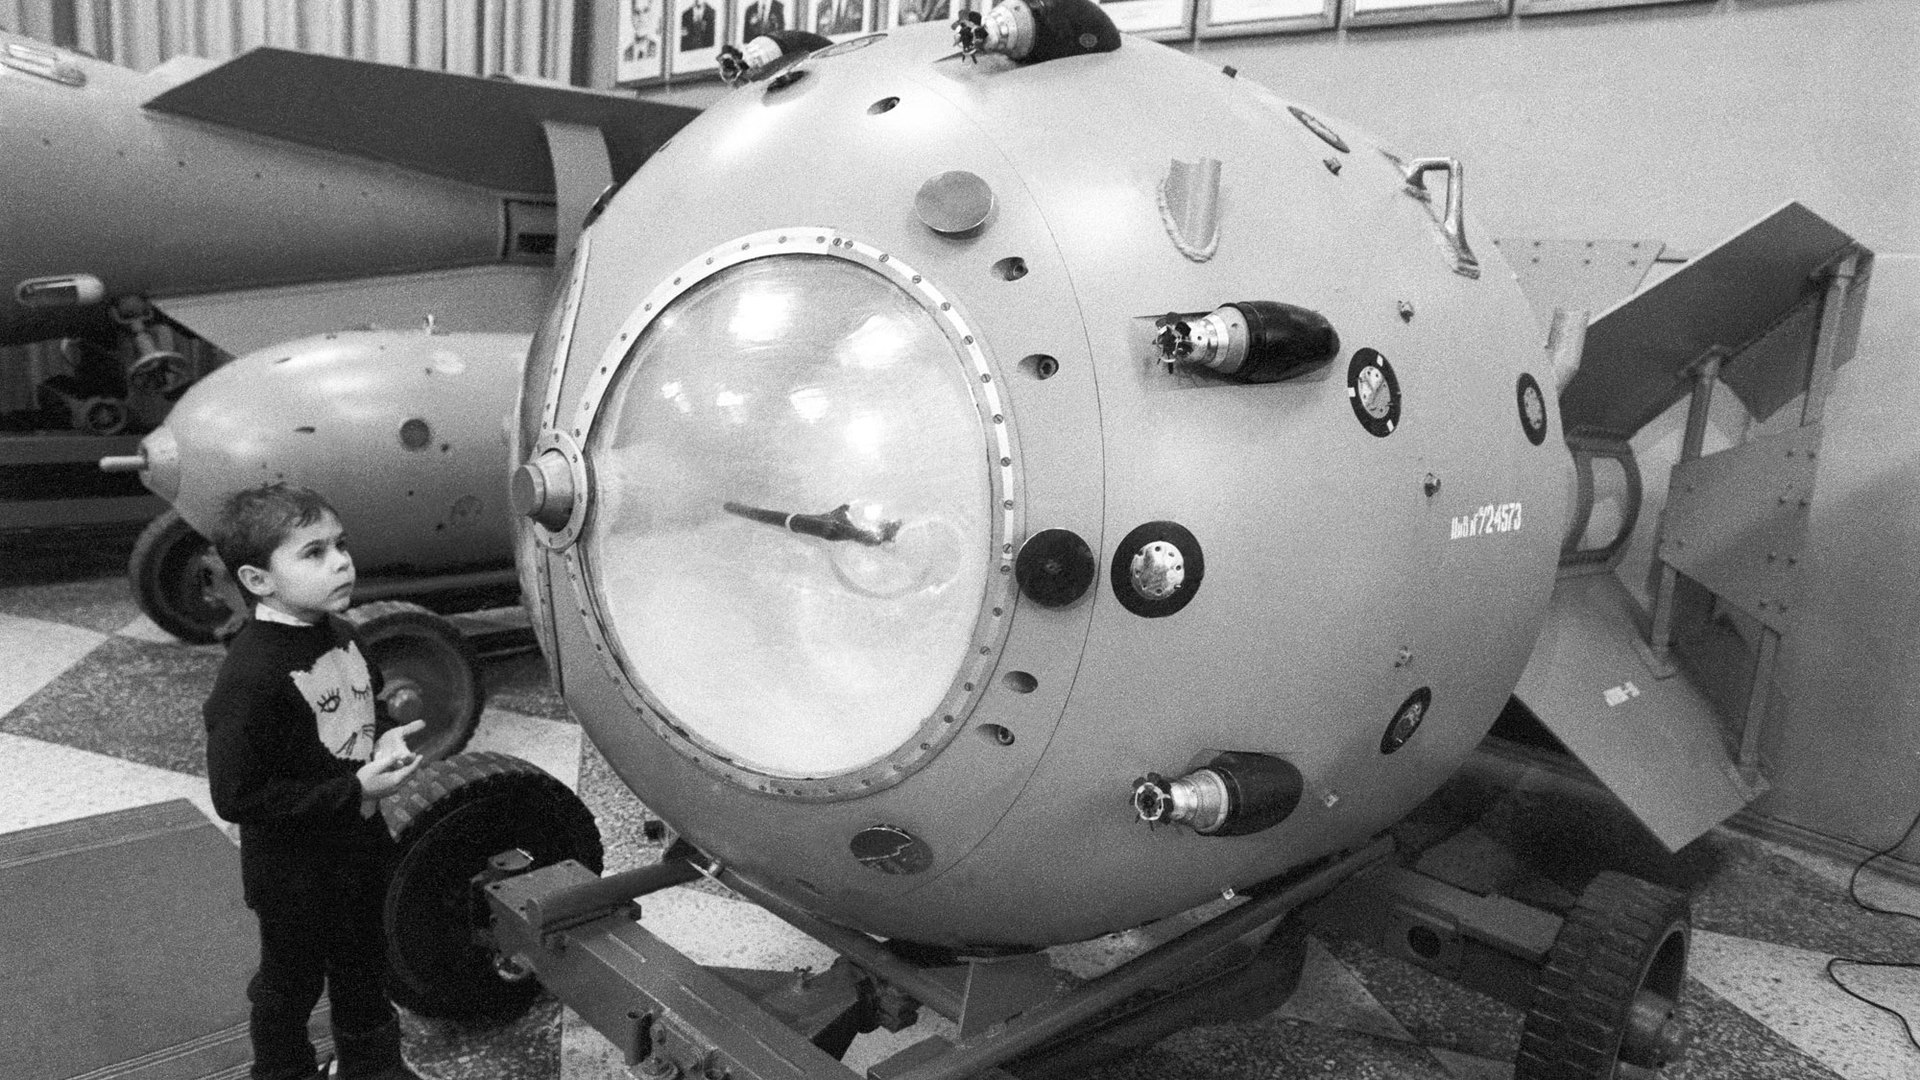 Ссср было создано атомное оружие. Атомная бомба РДС-1. Советская атомная бомба Курчатов. Советской атомной бомбы РДС-1. Первая Советская атомная бомба Курчатова.